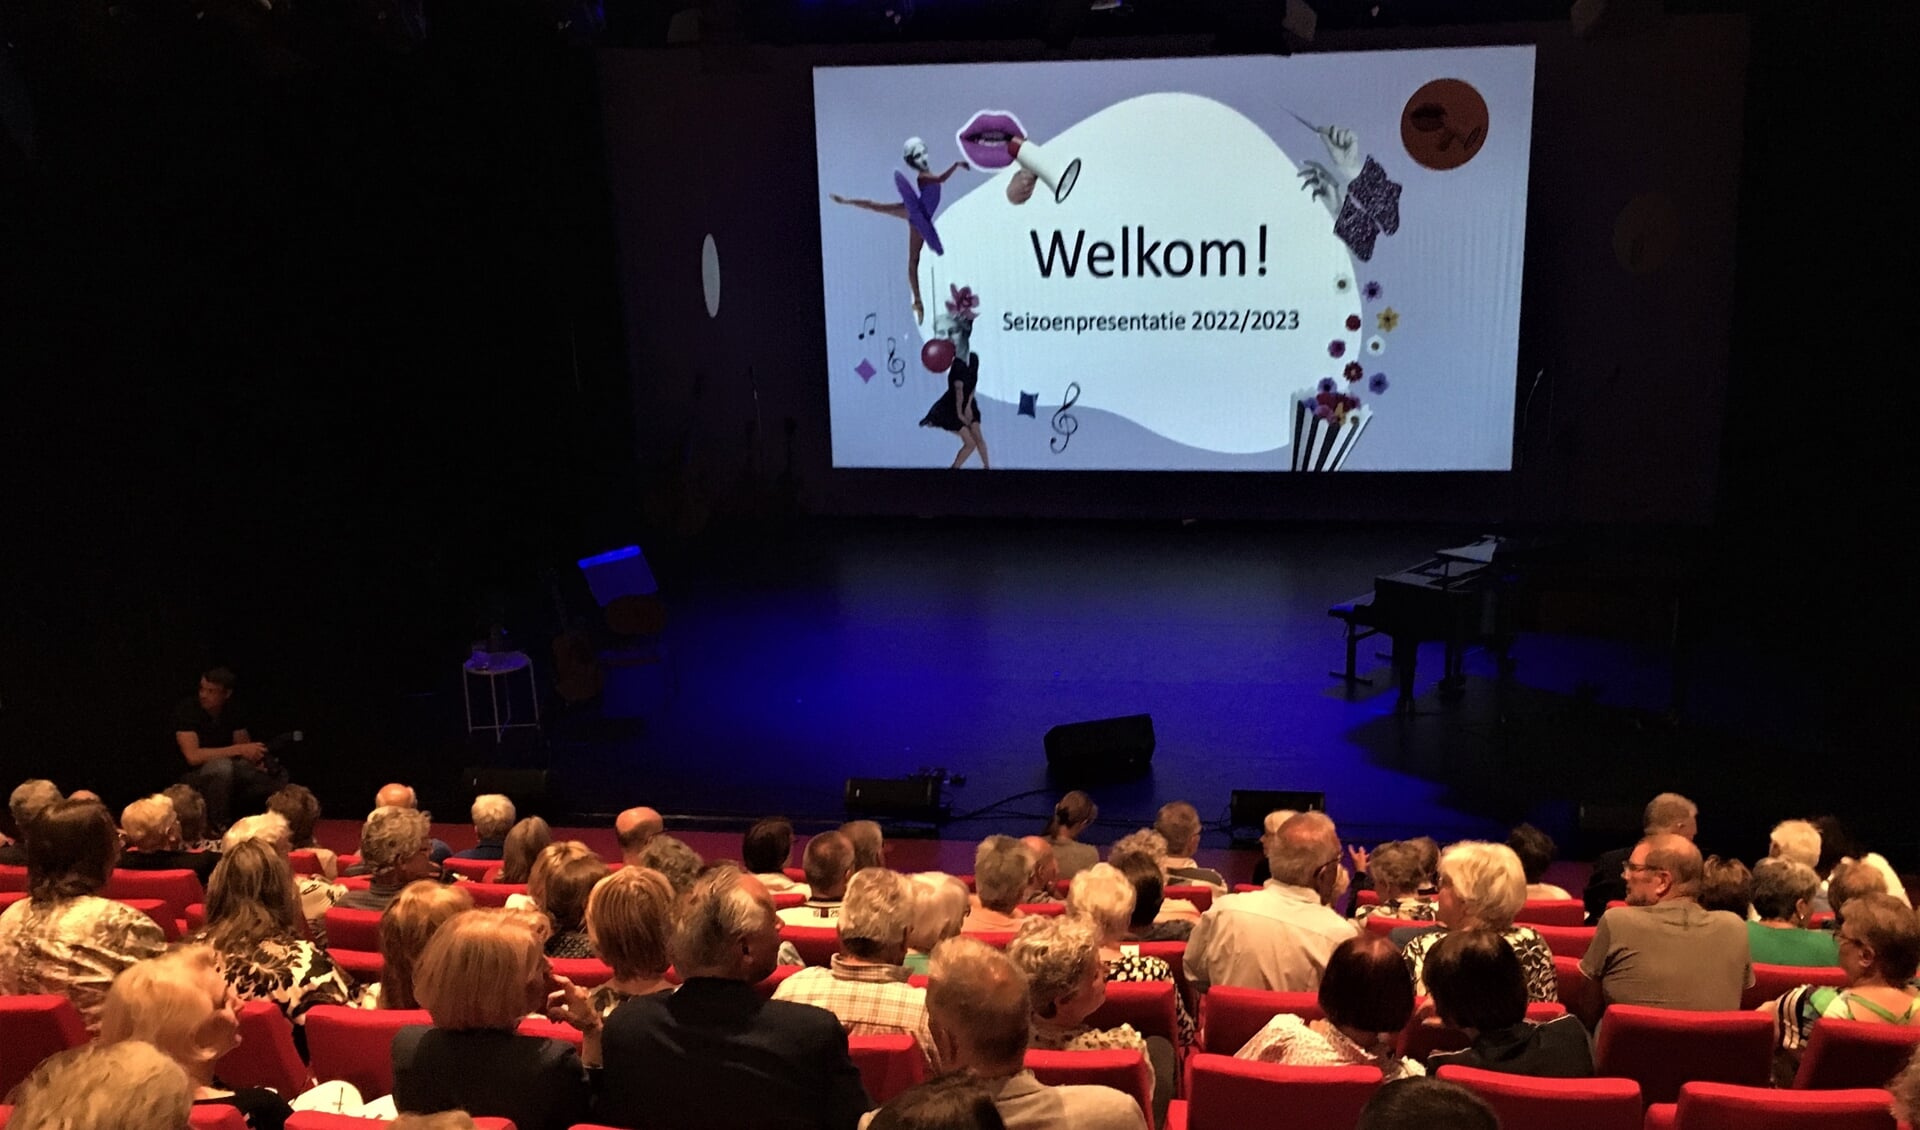 Theater Koningshof presenteerde vorige week vrijdagavond het programma voorkomend seizoen (22-23). Een aantal artiesten speelden daarbij een stukje uit hun voorstelling.